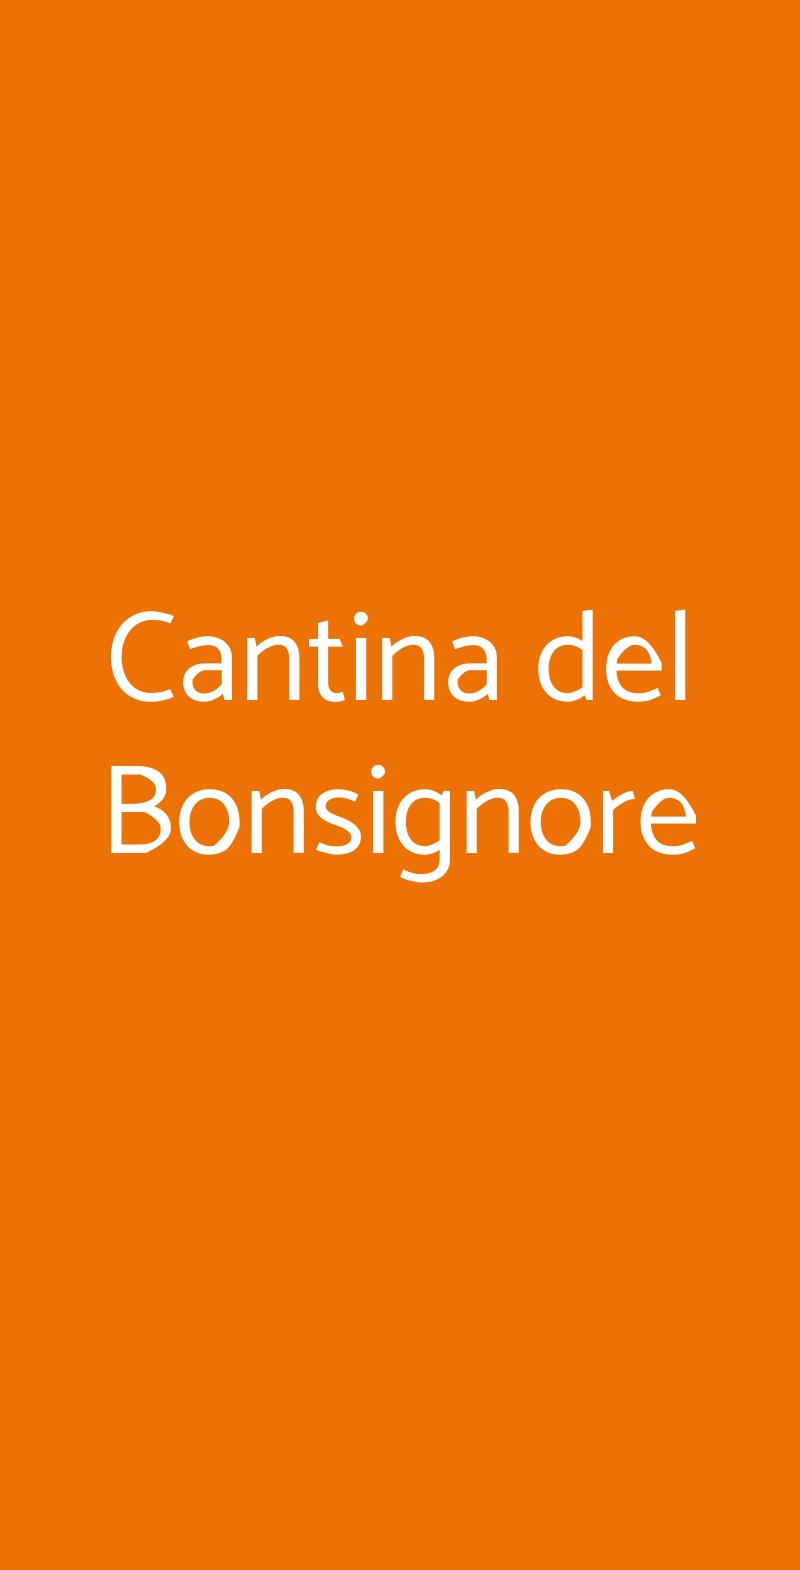 Cantina del Bonsignore Brisighella menù 1 pagina